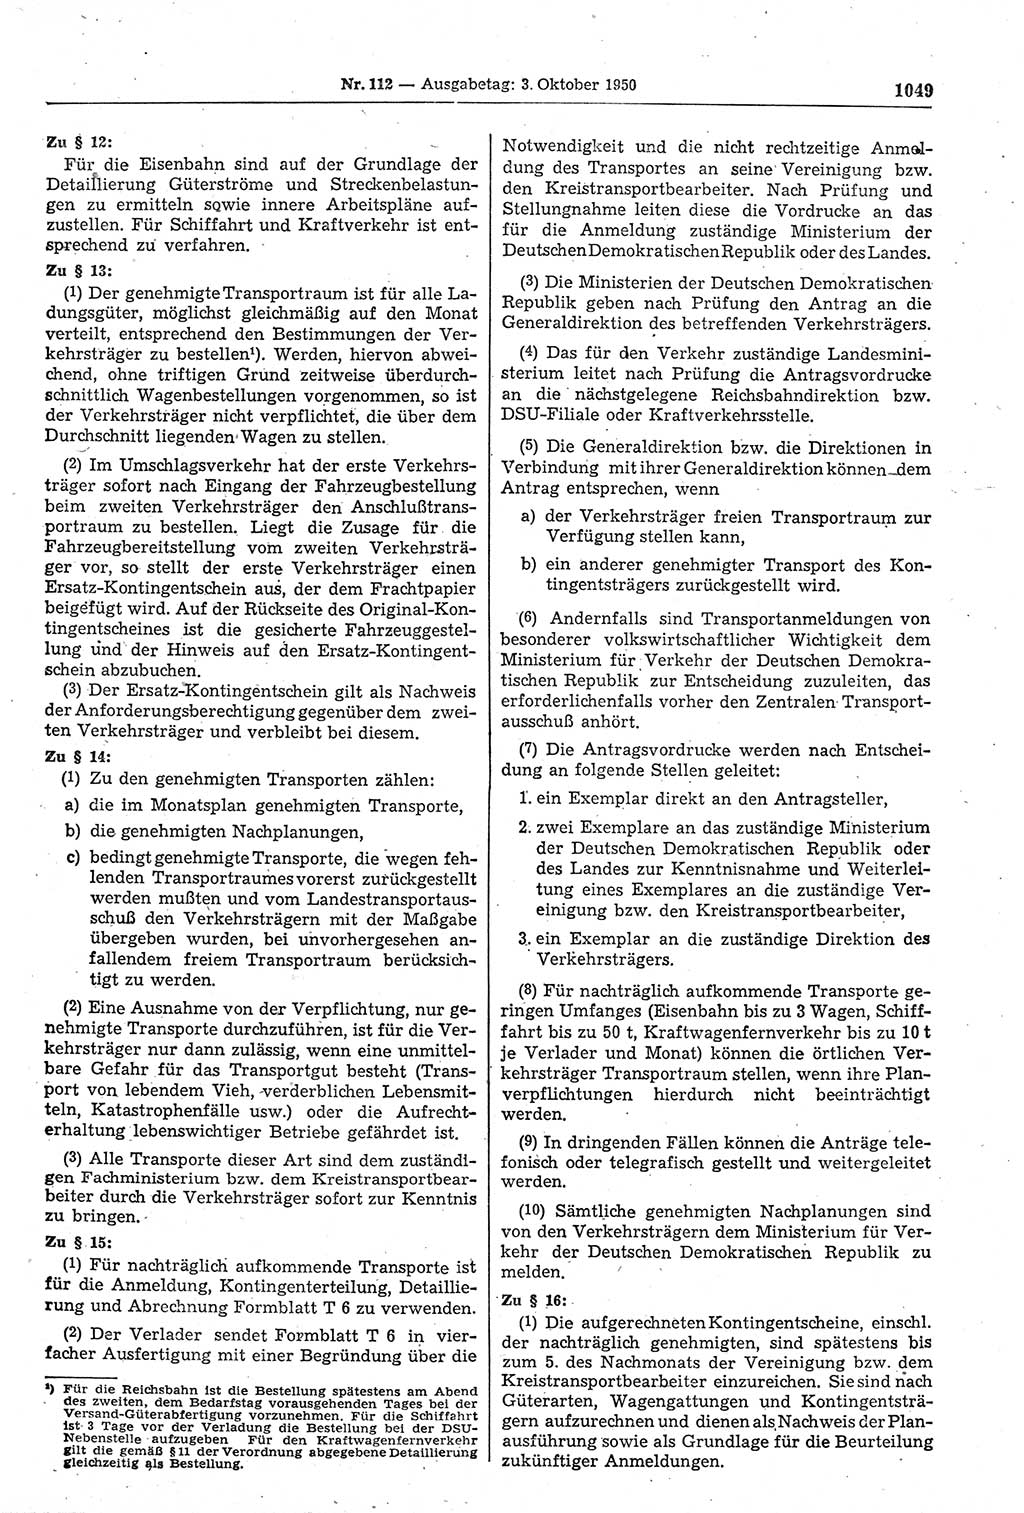 Gesetzblatt (GBl.) der Deutschen Demokratischen Republik (DDR) 1950, Seite 1049 (GBl. DDR 1950, S. 1049)